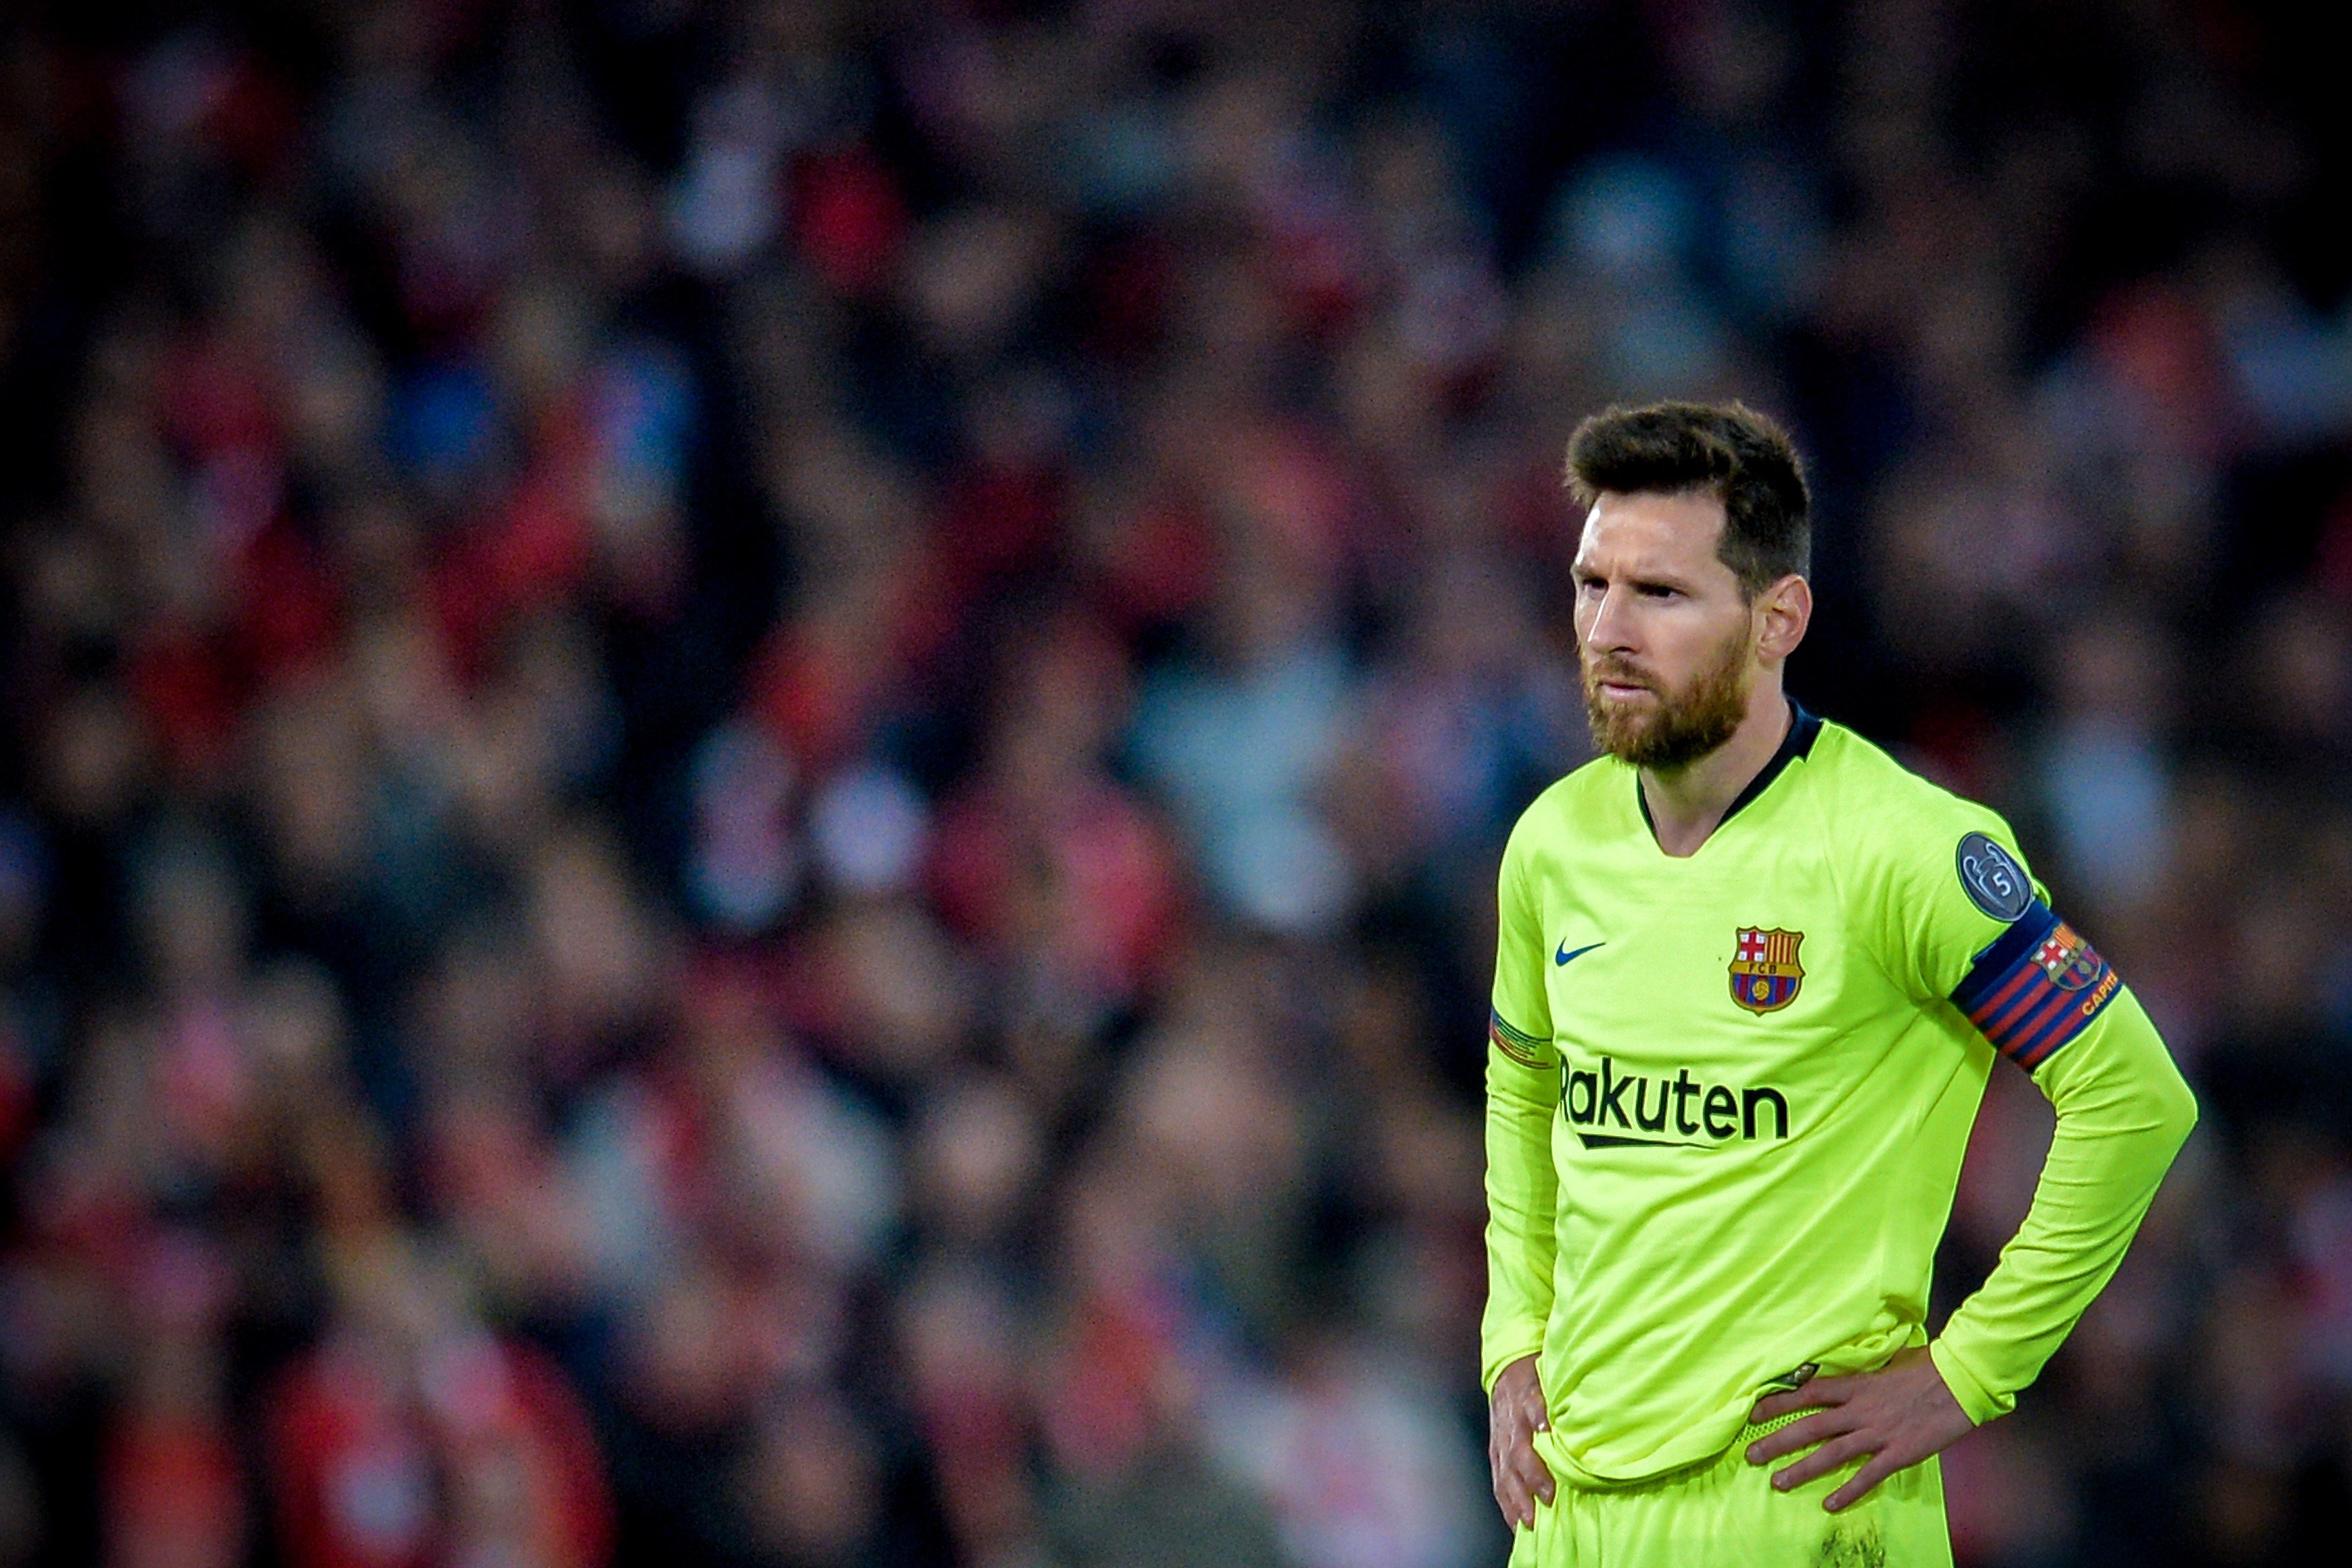 Messi s'hauria encarat amb seguidors del Barça a l'aeroport de Liverpool